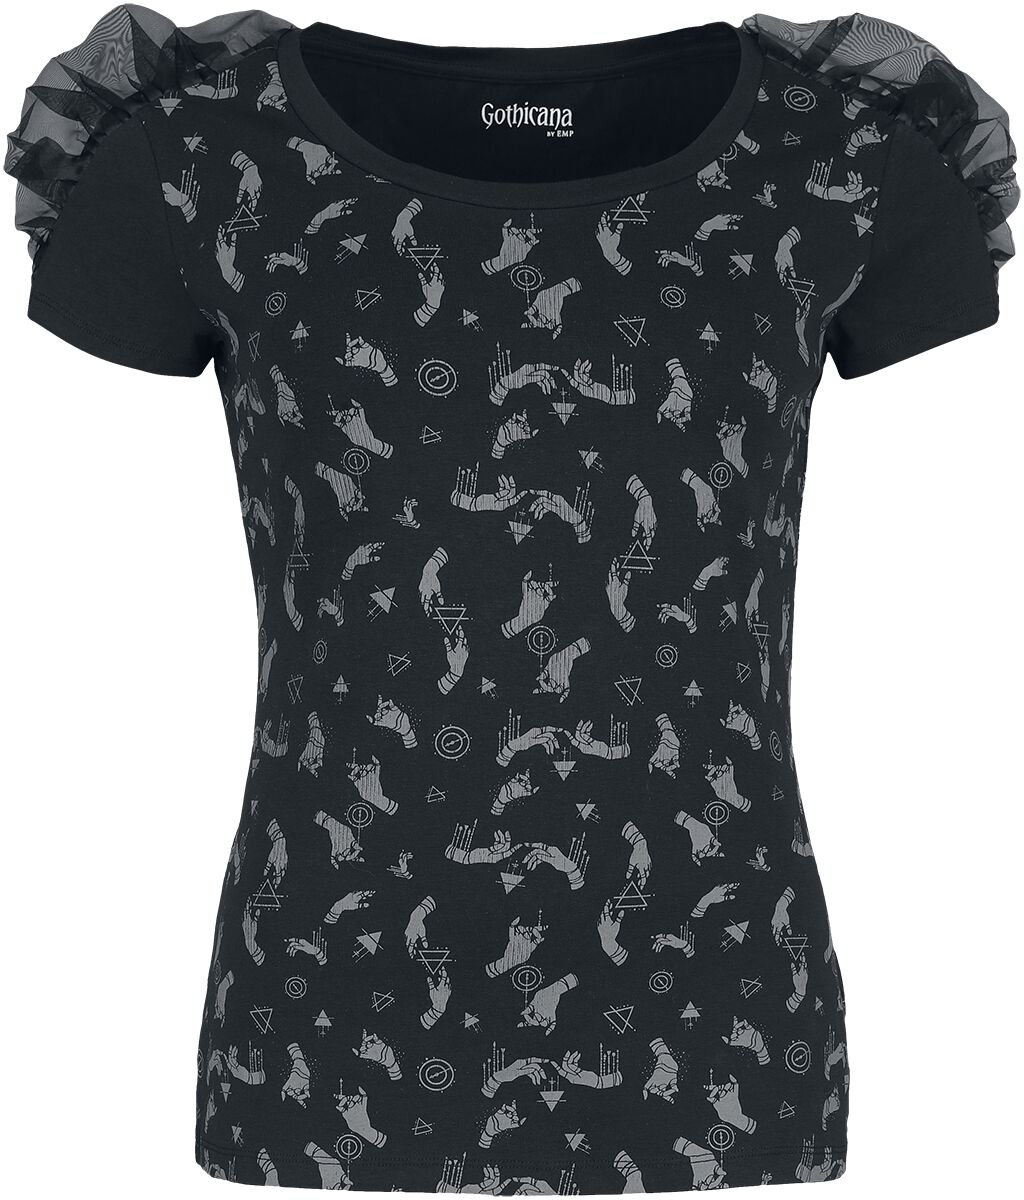 Gothicana by EMP - Gothic T-Shirt - Gathered T-Shirt with Alloverprint - XS bis XL - für Damen - Größe M - schwarz